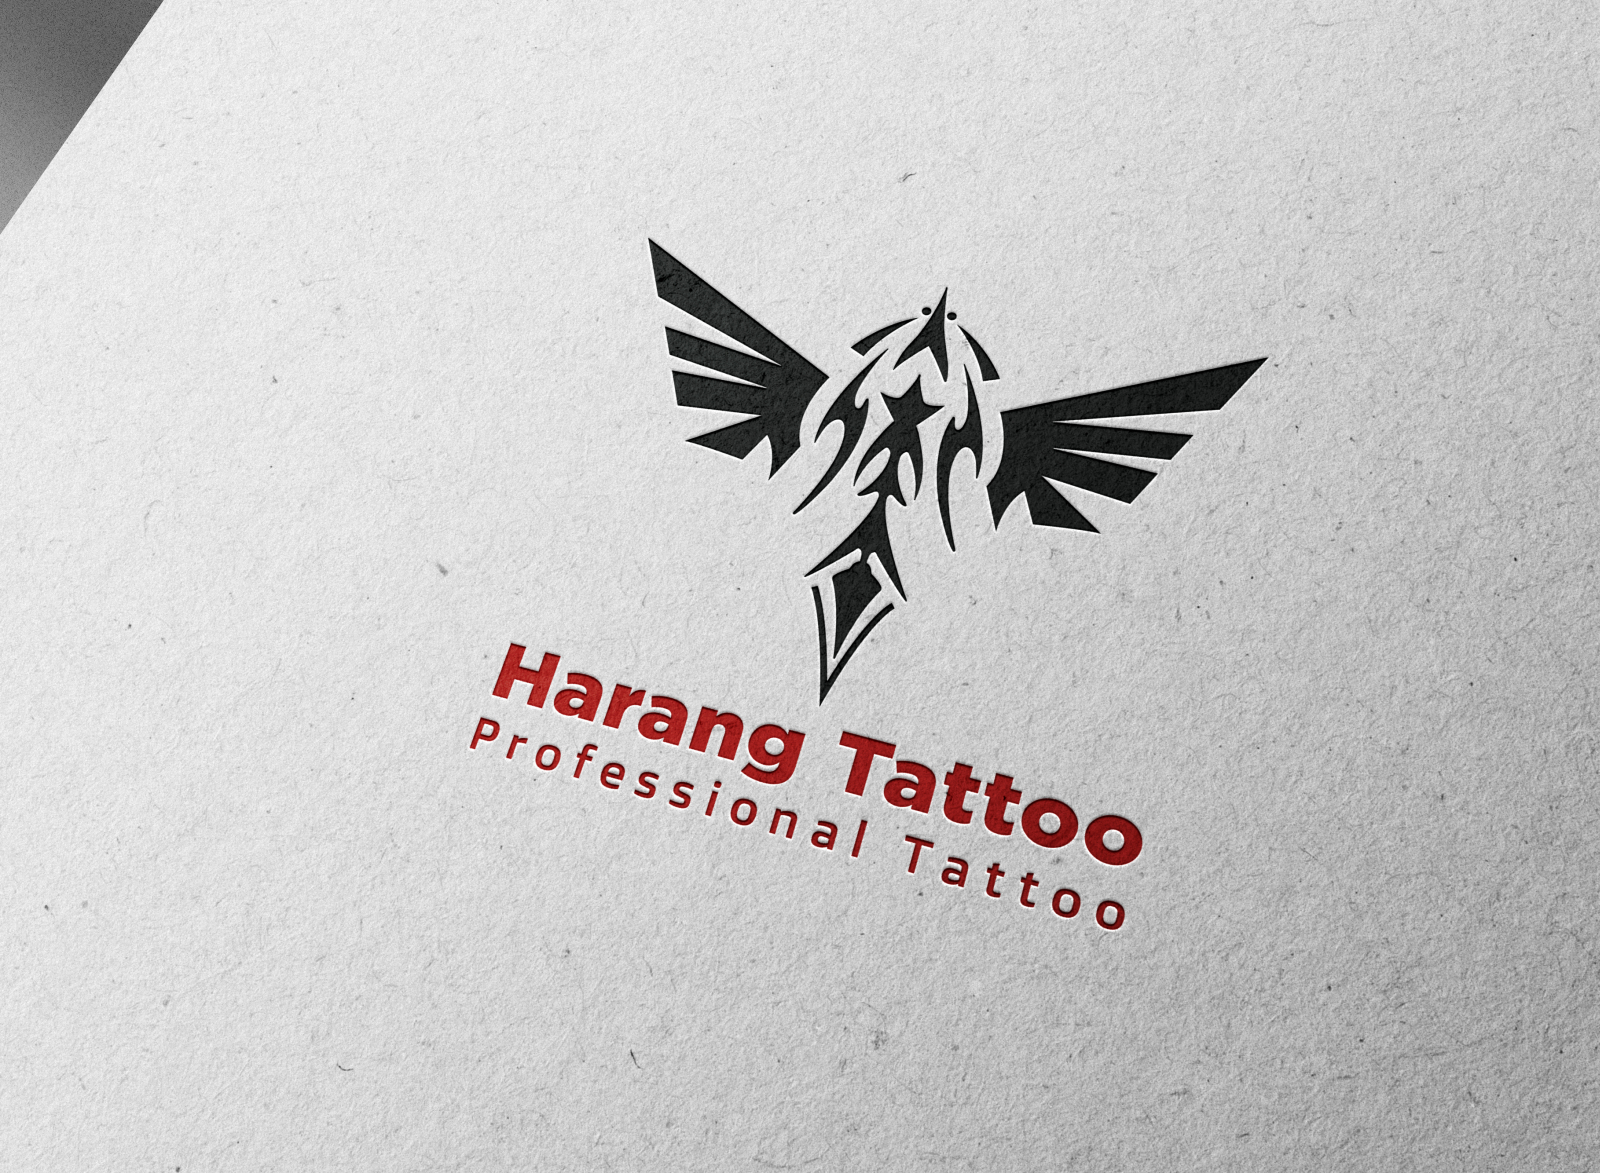 Tattoo Logos - 202+ Best Tattoo Logo Ideas. Free Tattoo Logo Maker. |  99designs